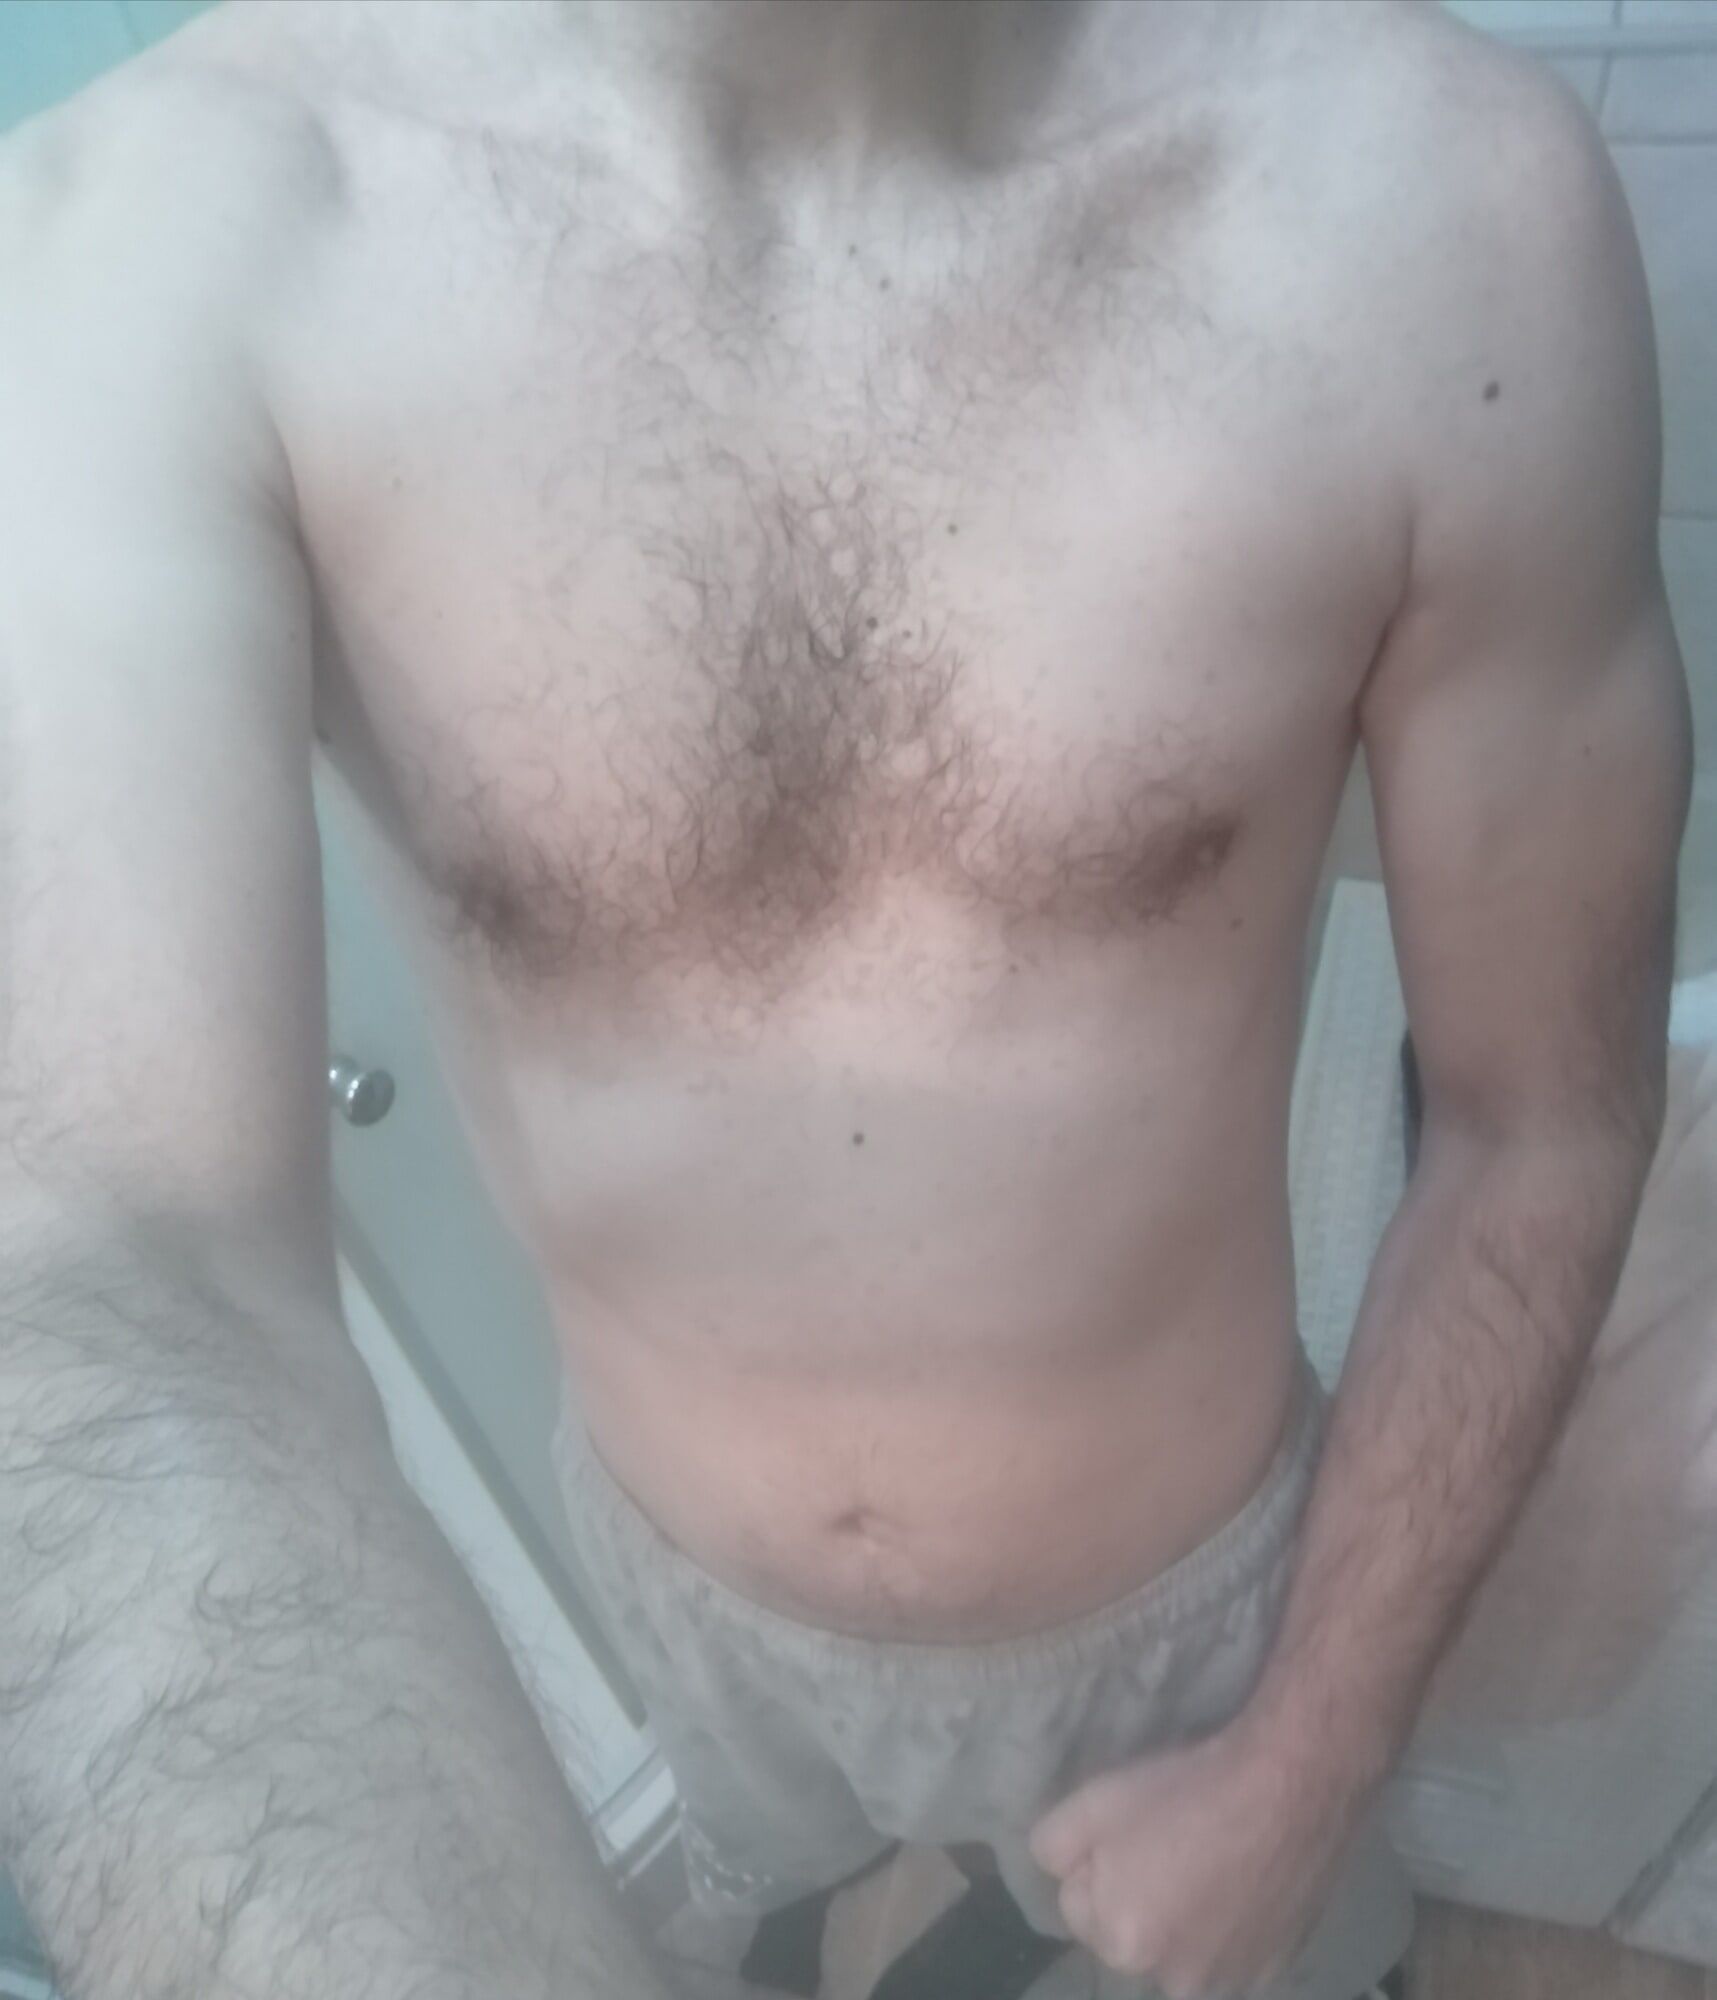 Body before shaving